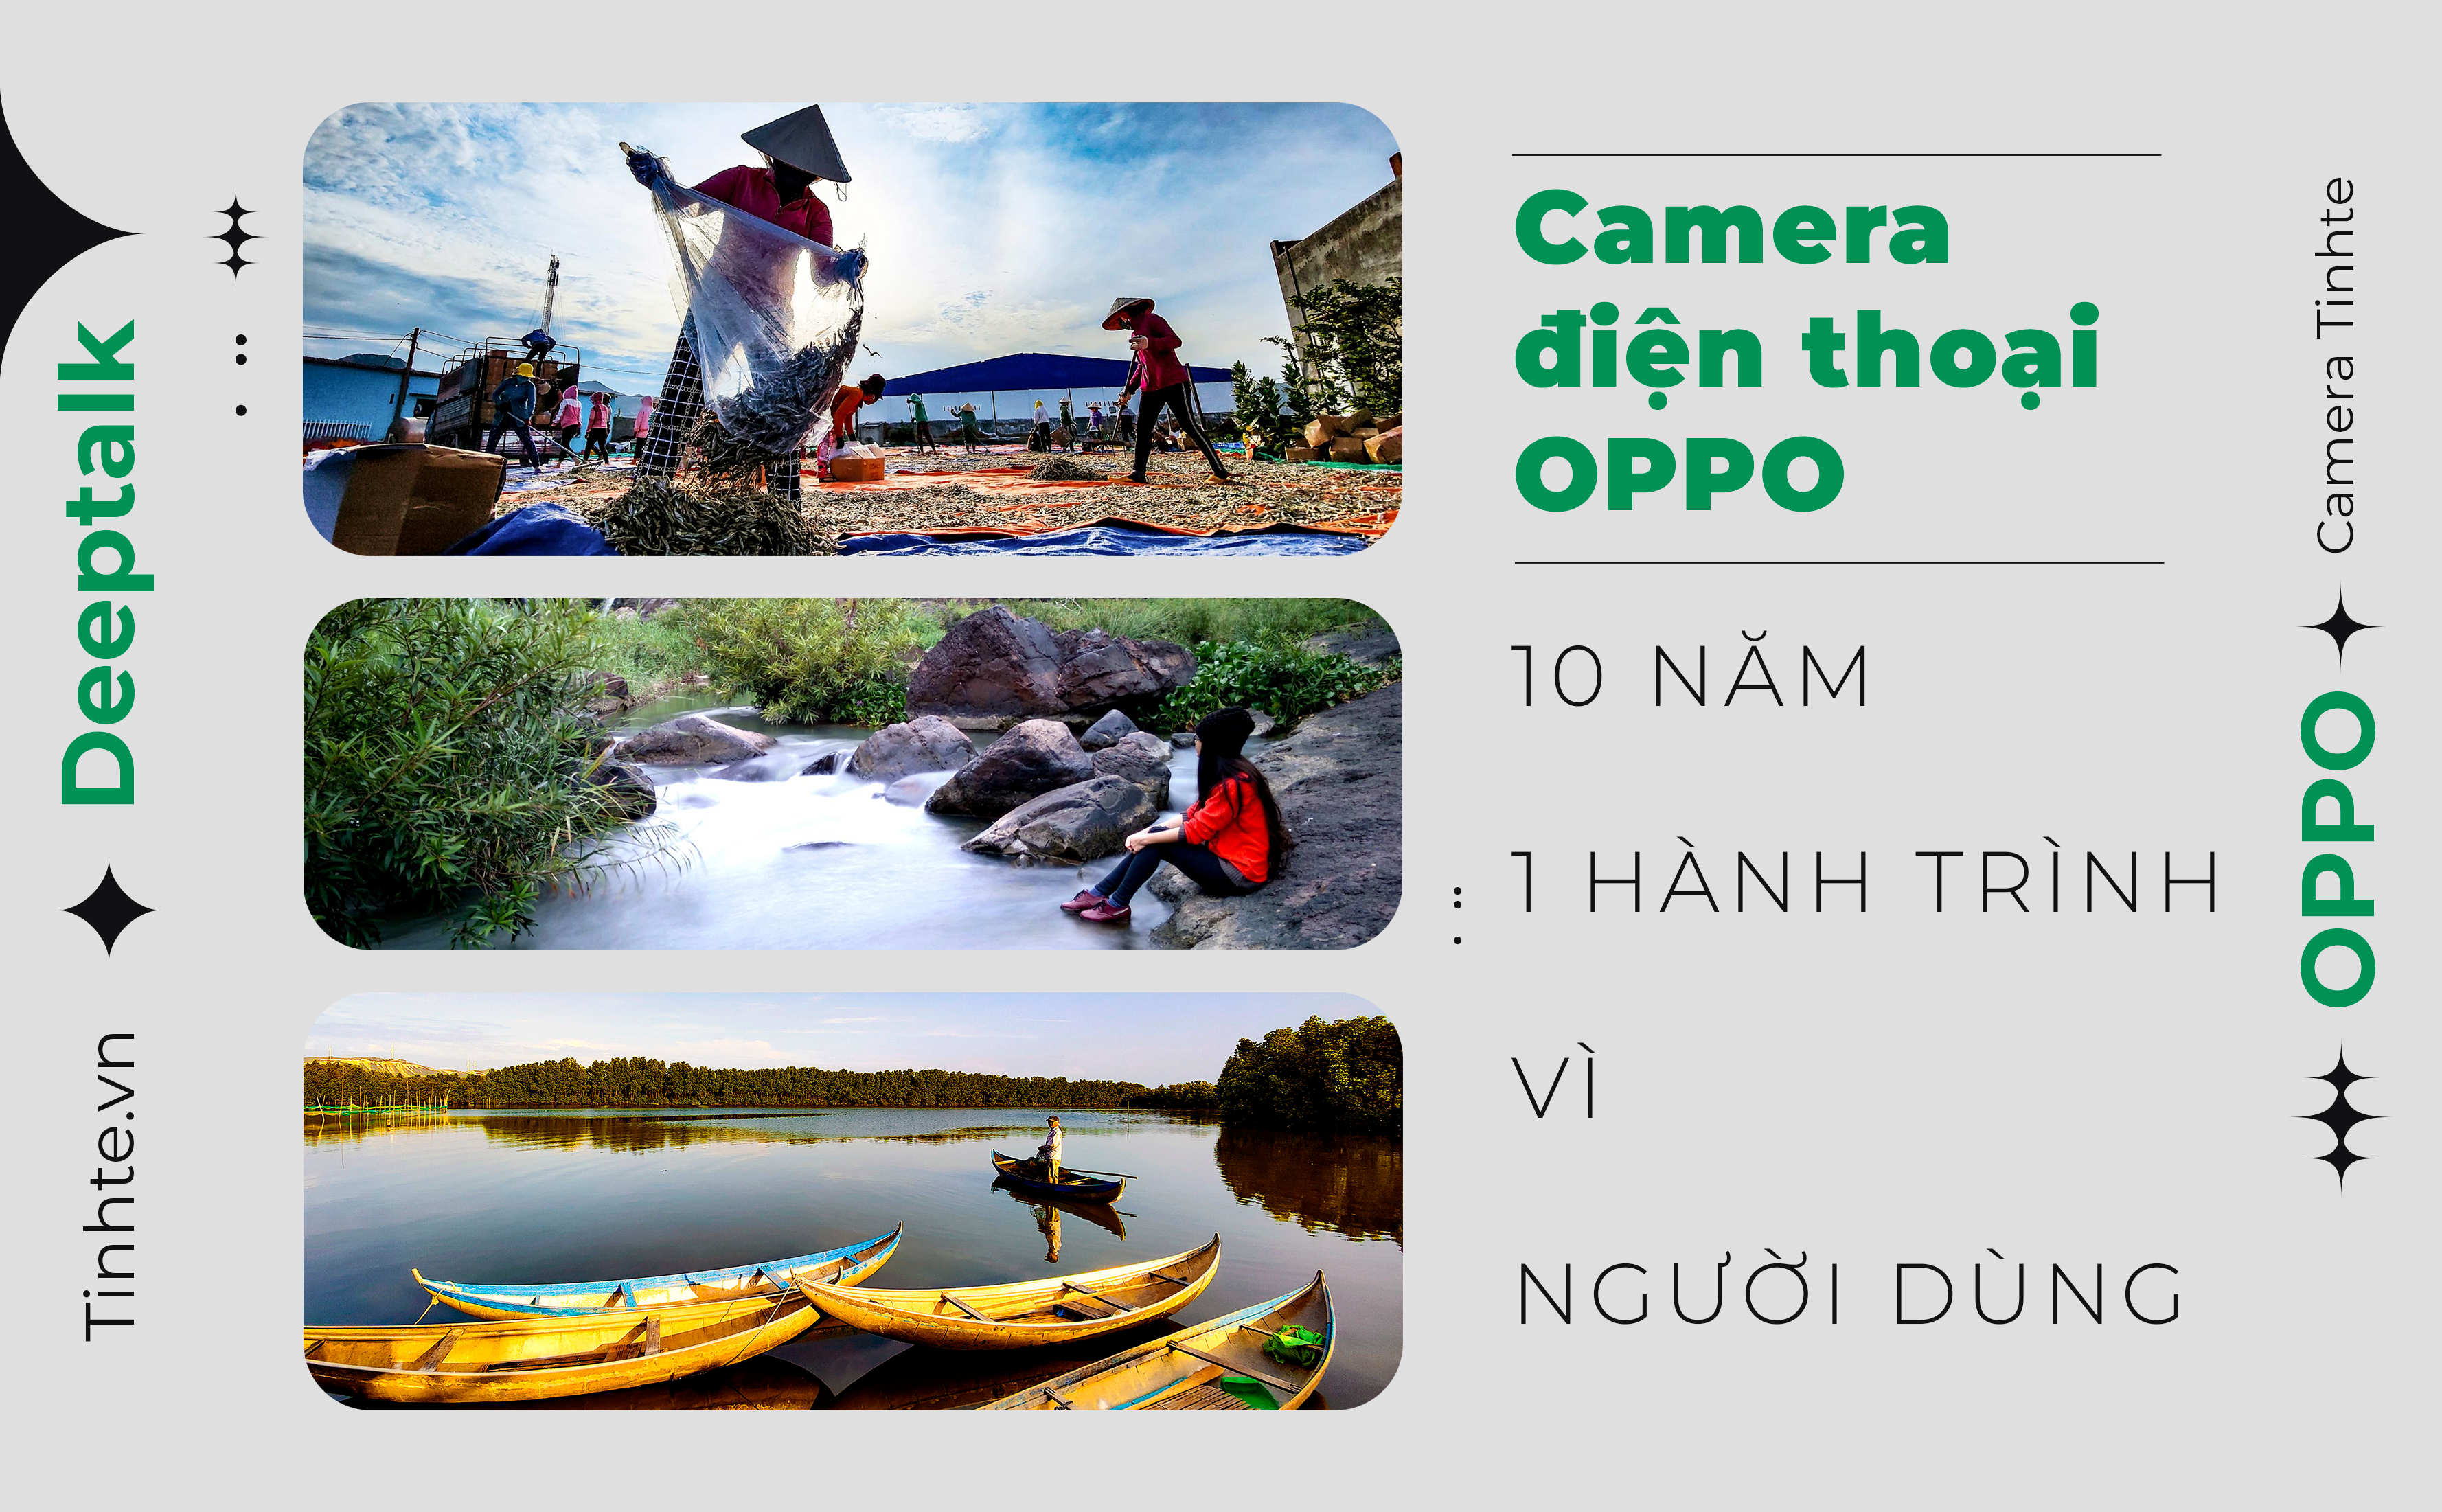 Camera điện thoại Oppo - 10 năm cho một hành trình vì người dùng